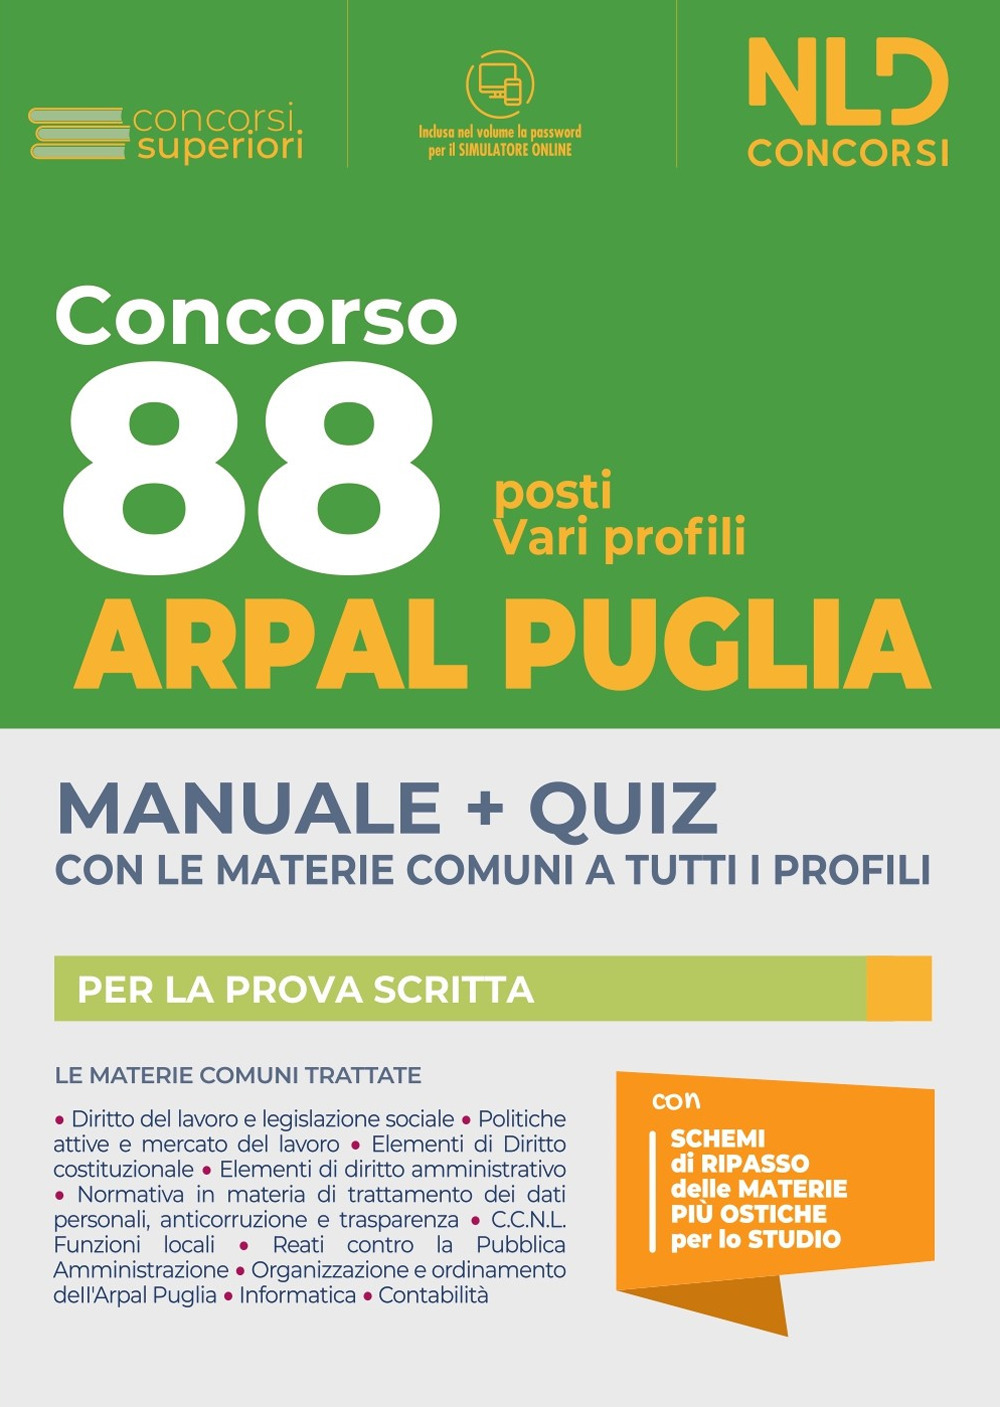 Concorso 88 ARPAL Puglia: Manuale + Quiz per 88 posti vari profili. Con software di simulazione